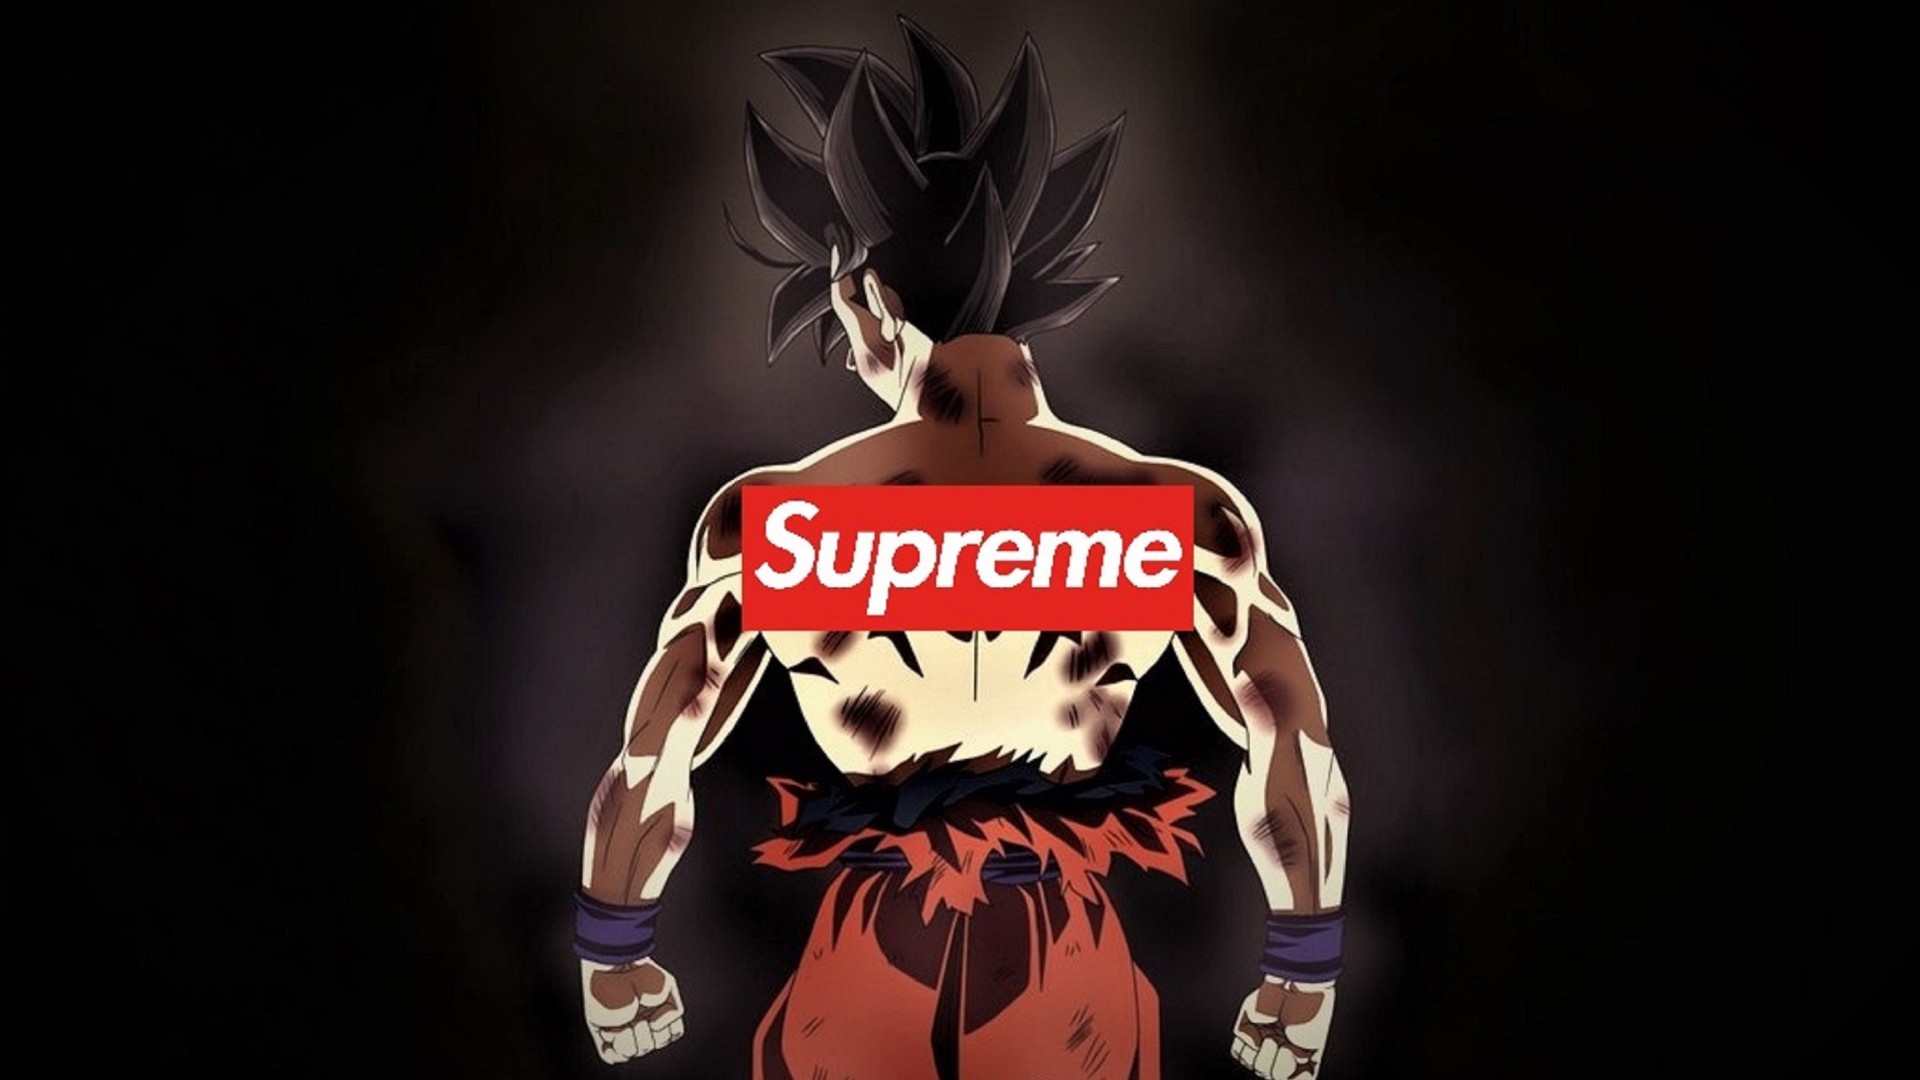 Goku Supreme Hoodie Wallpapers